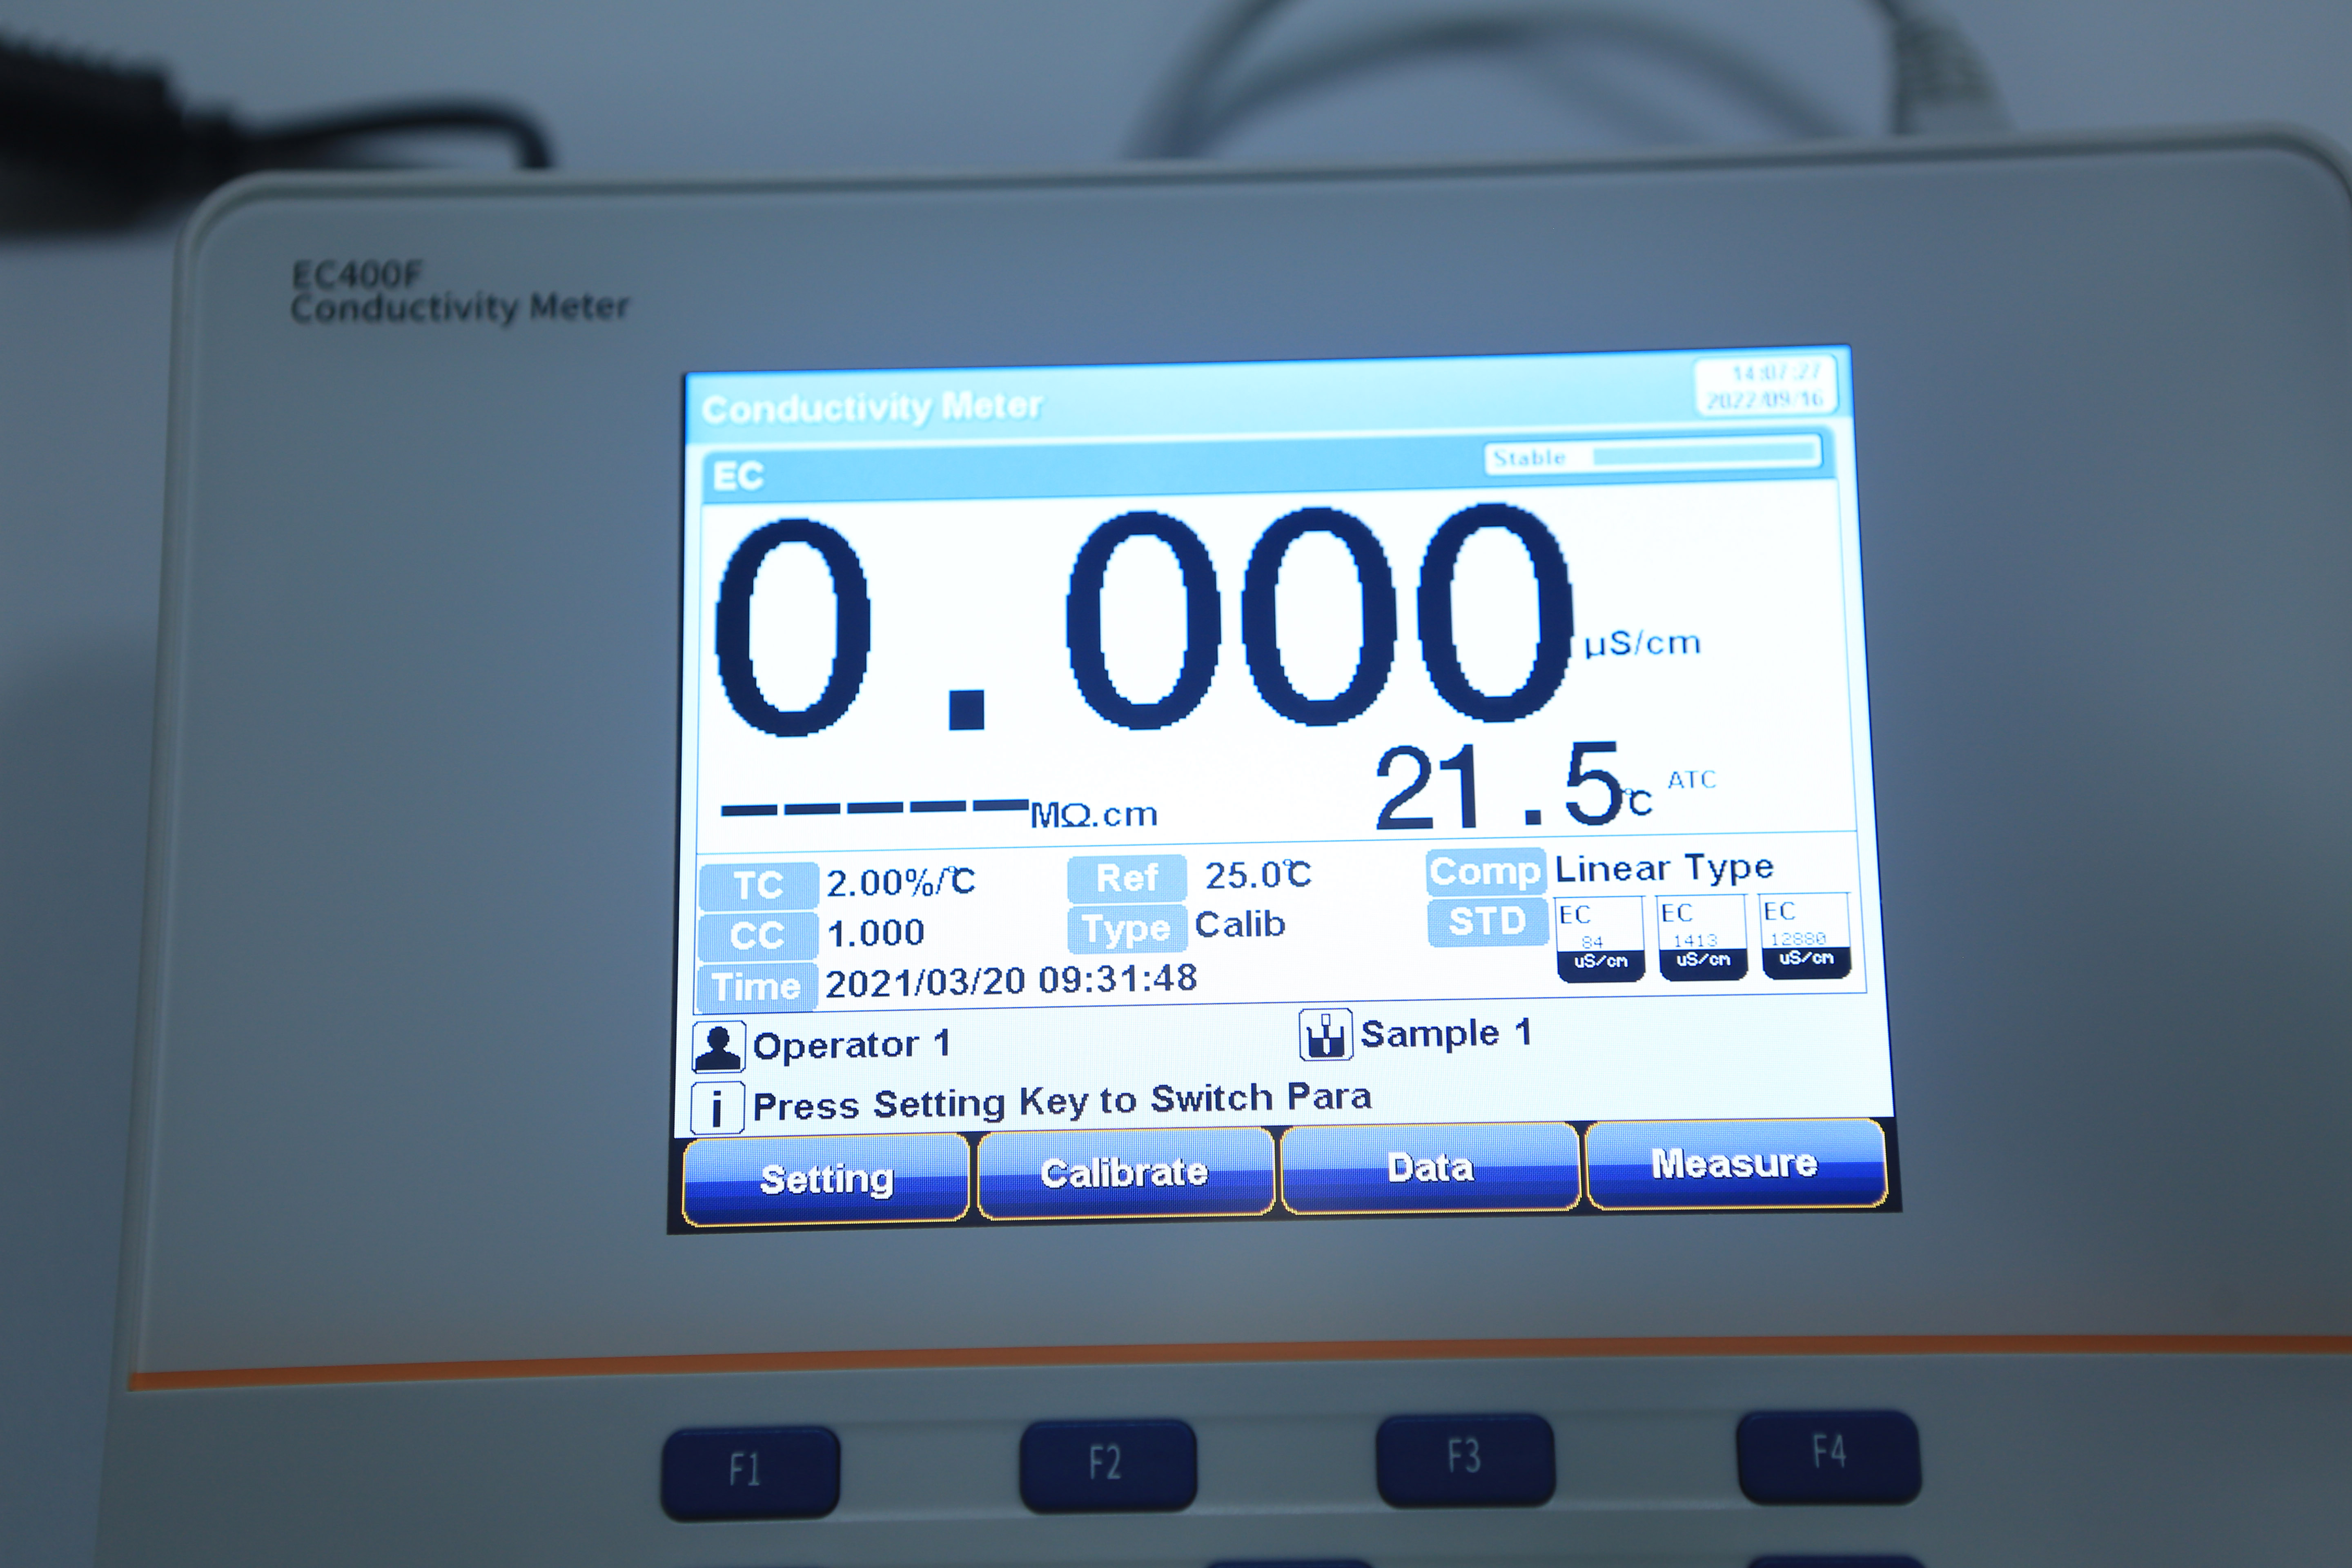 EC400F Benchtop Conductivity Meter